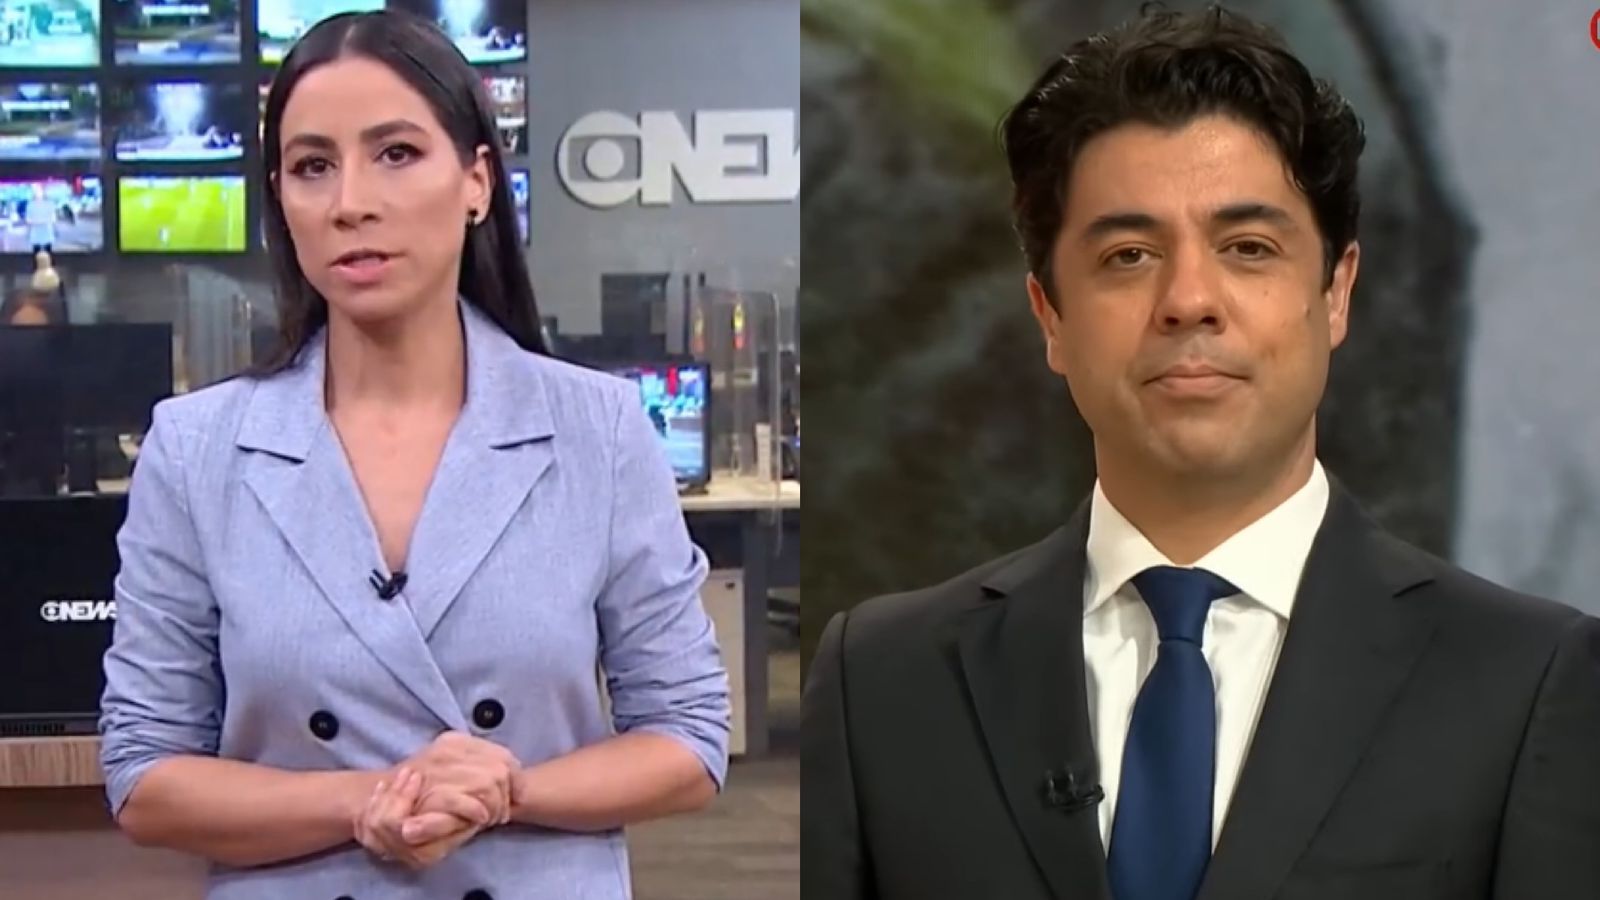 GloboNews mira em eleições para turbinar audiência de novo telejornal